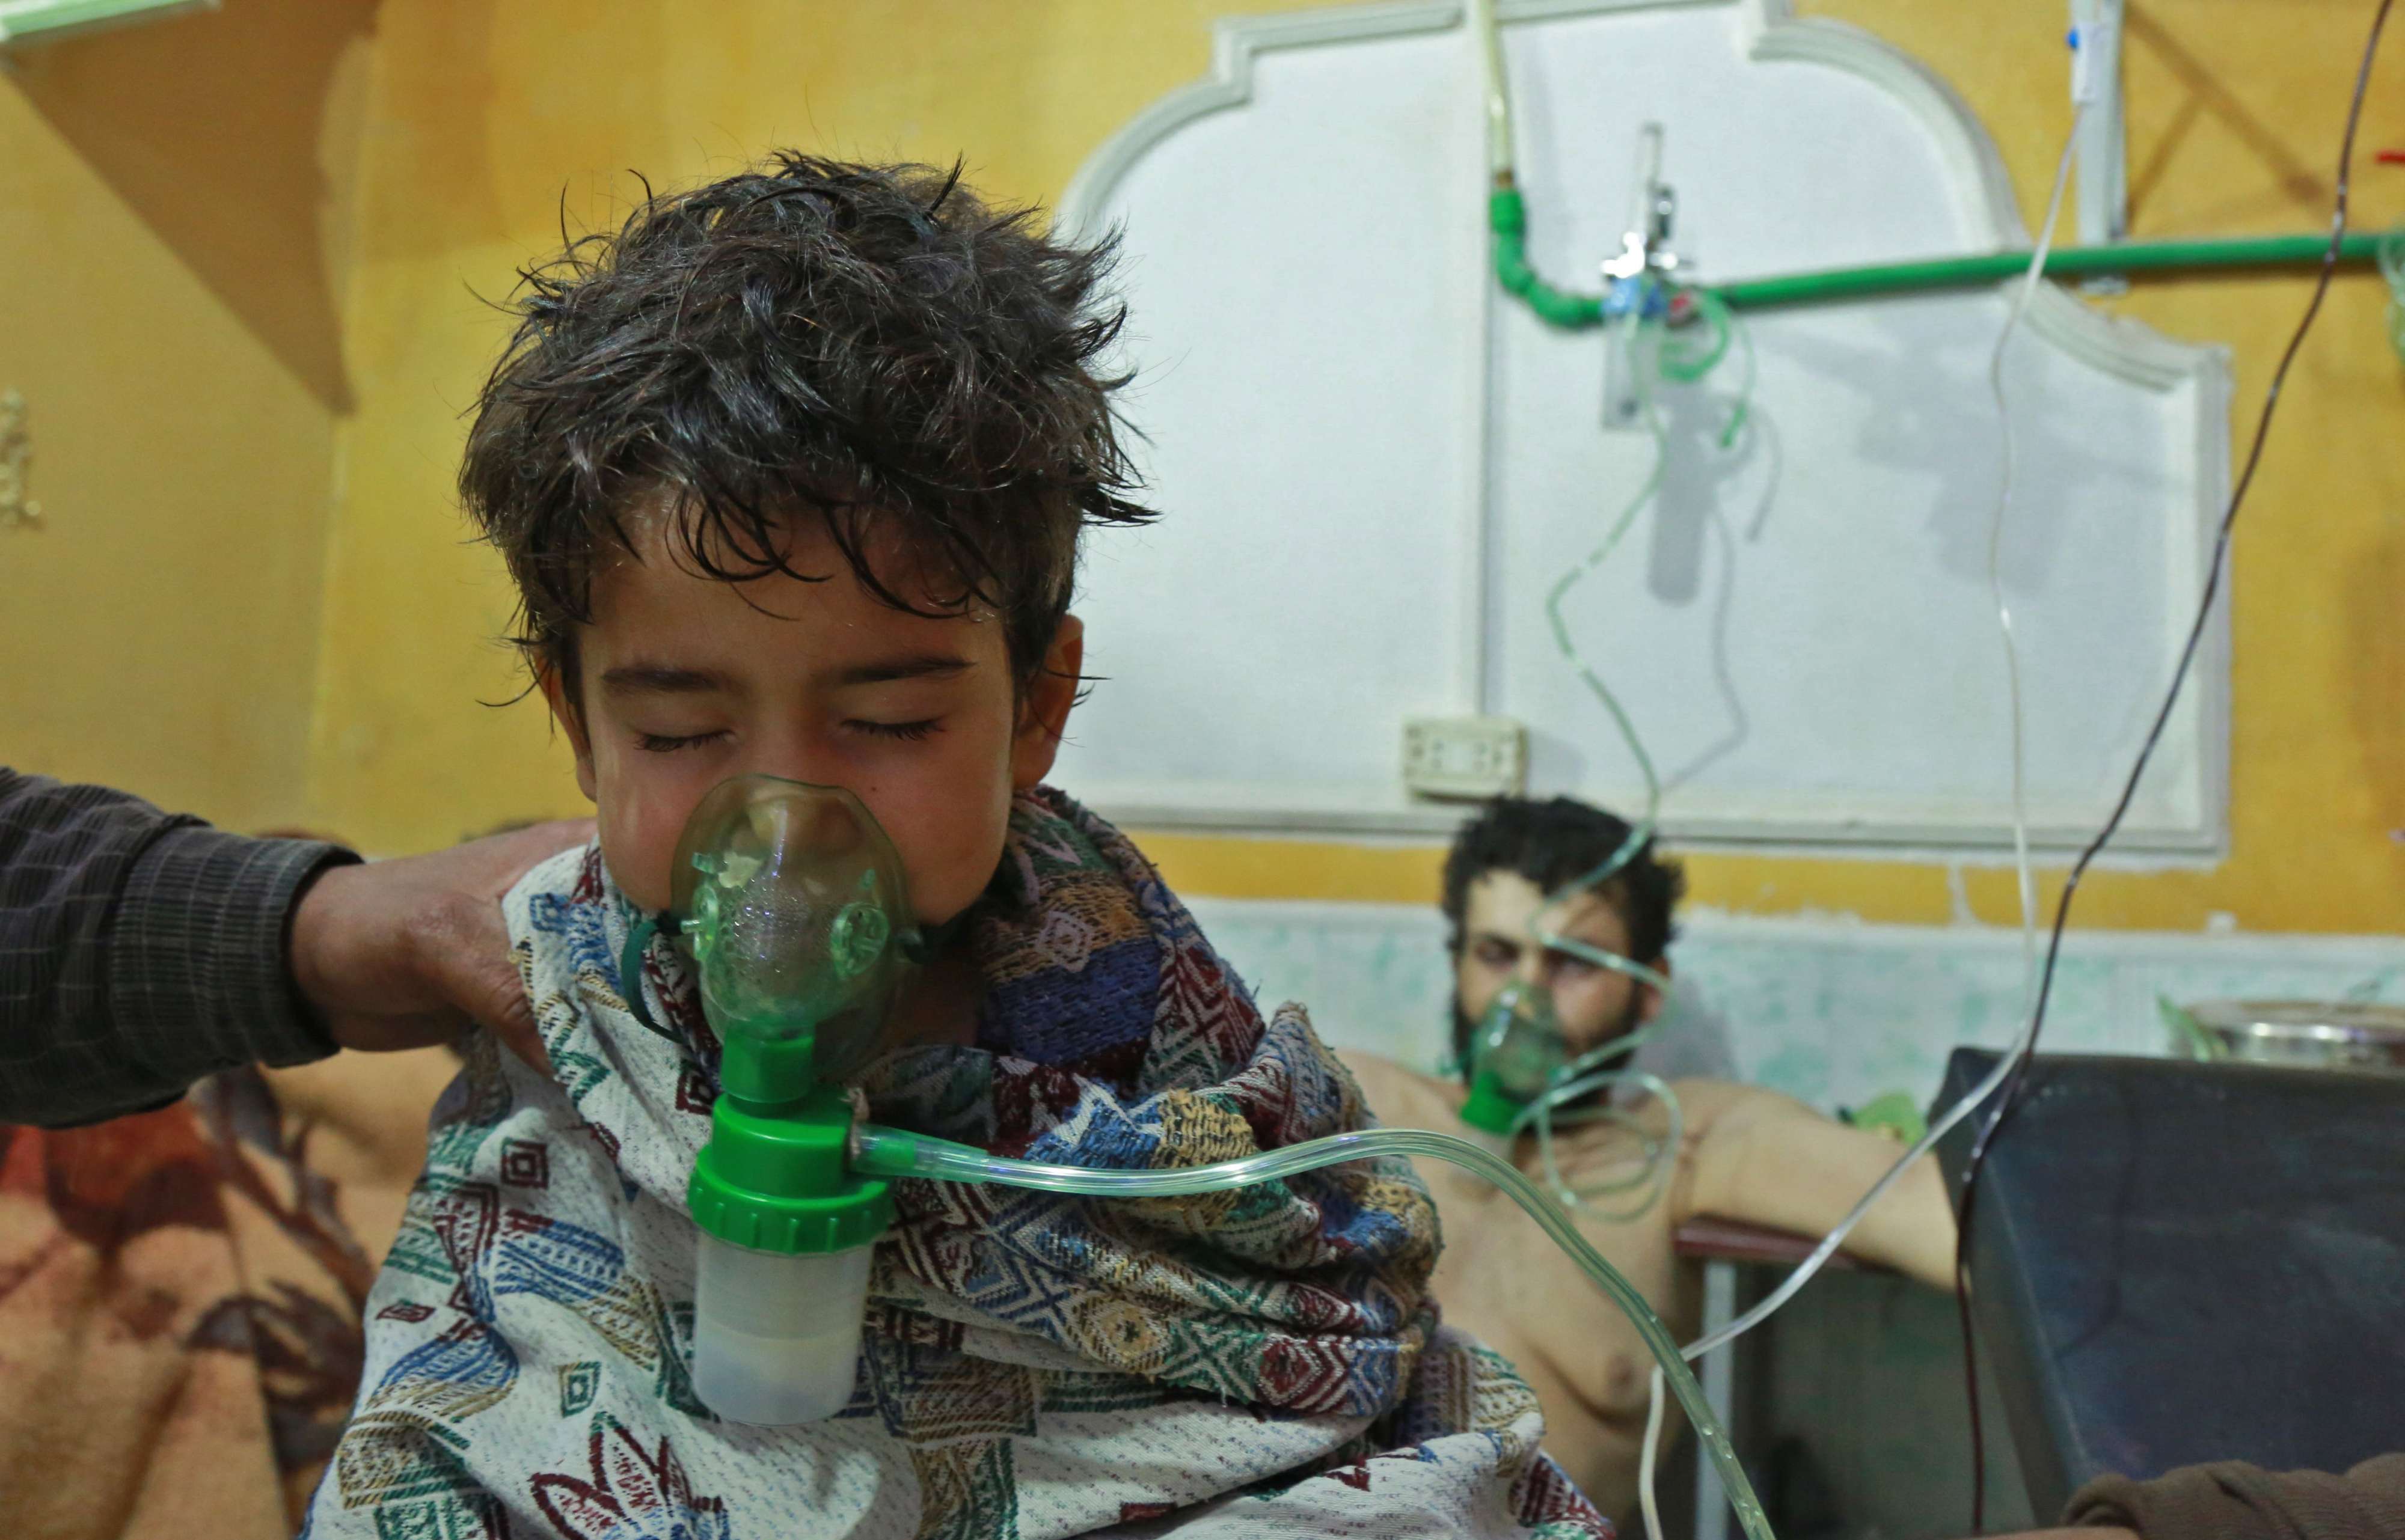  الأطفال بعد الكيماوي بسوريا